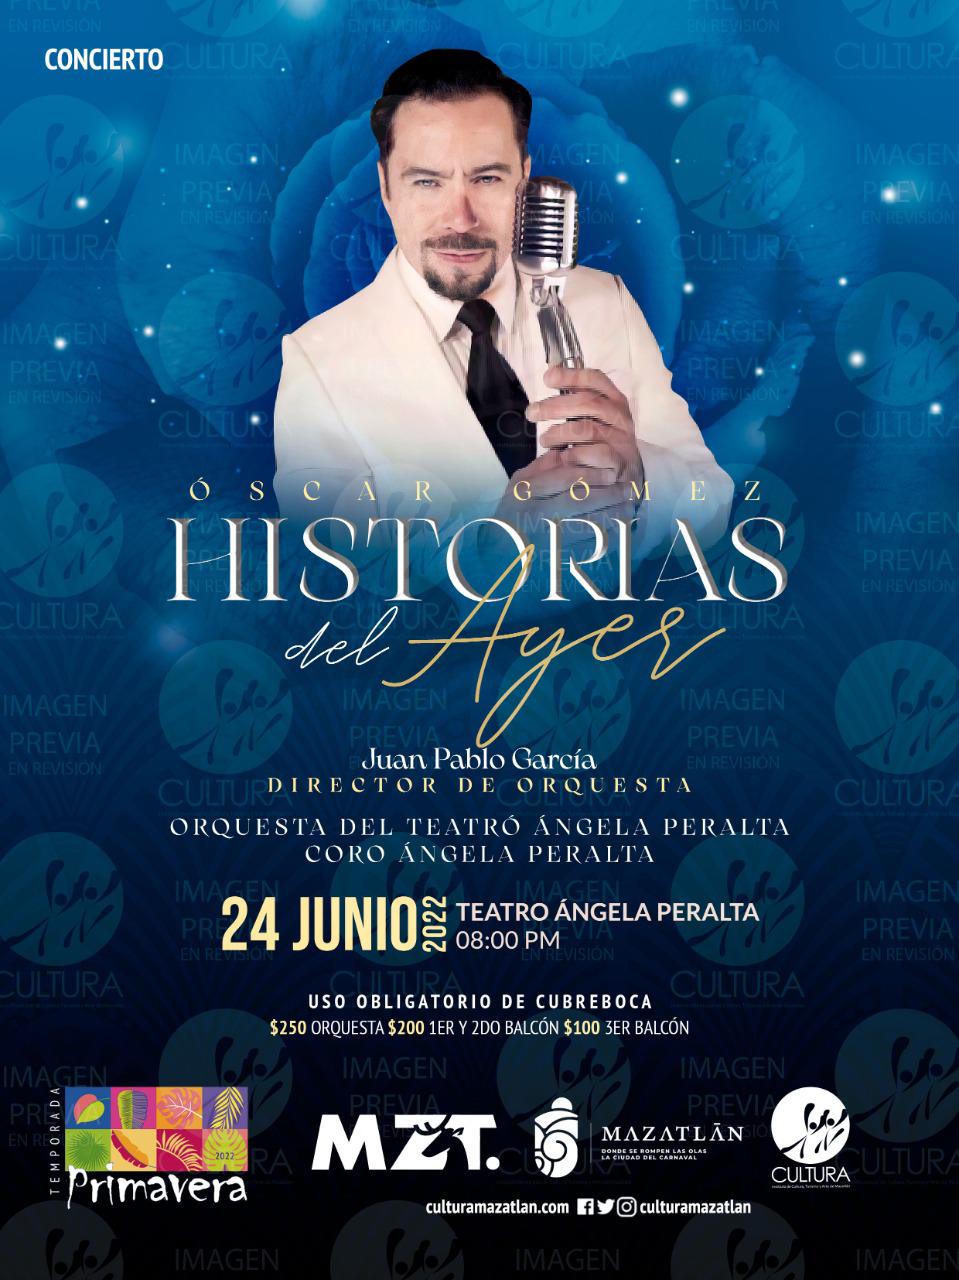 $!El concierto se tiene previsto para el viernes 24 de junio en el Teatro Ángela Peralta.